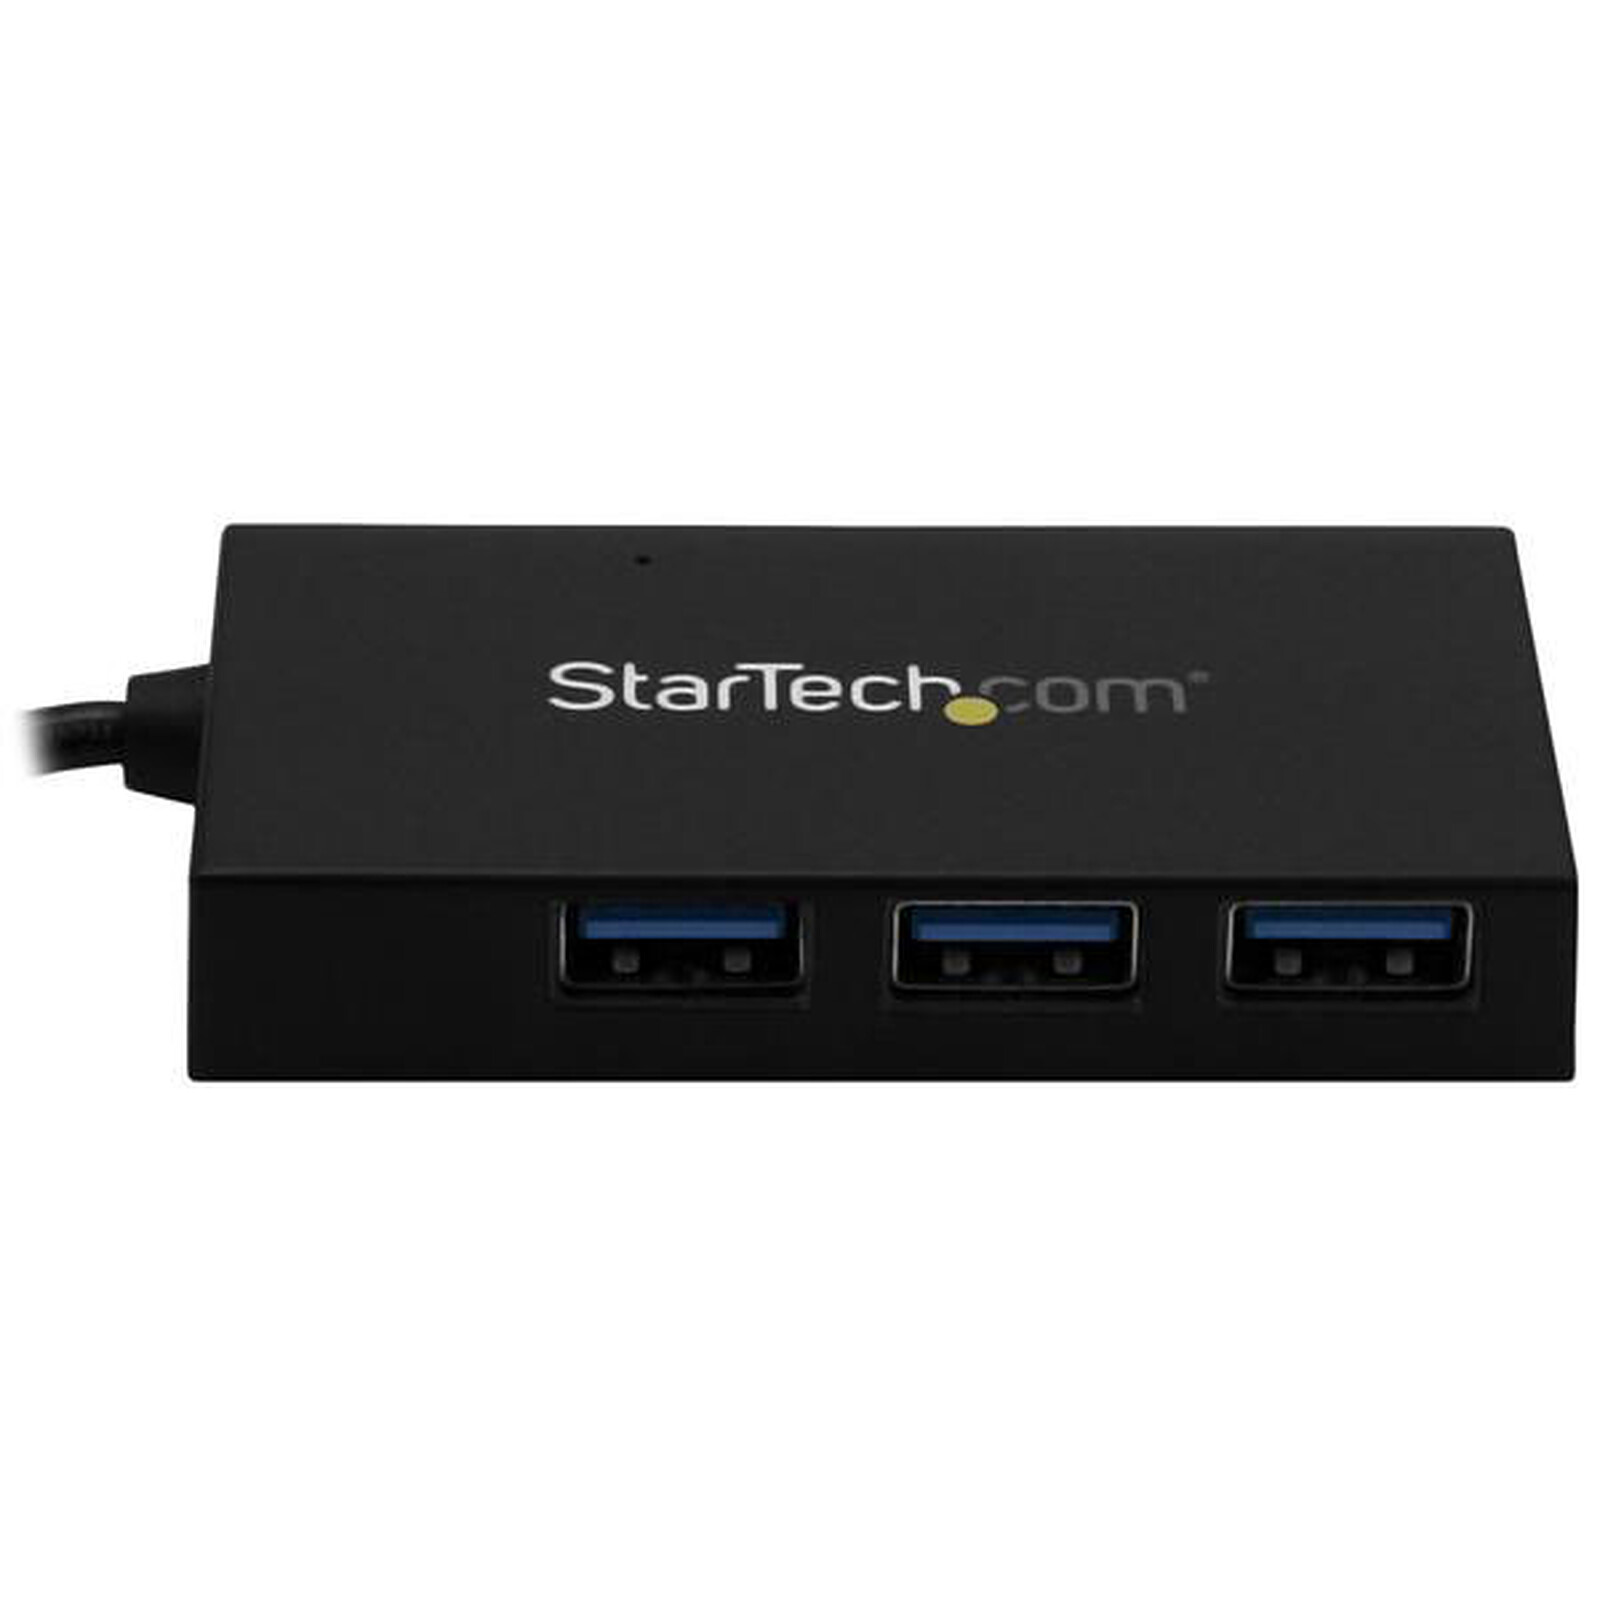 StarTech.com Hub USB-C 4 Ports - 3 Ports USB-A, 1 Port USB-C - HUB